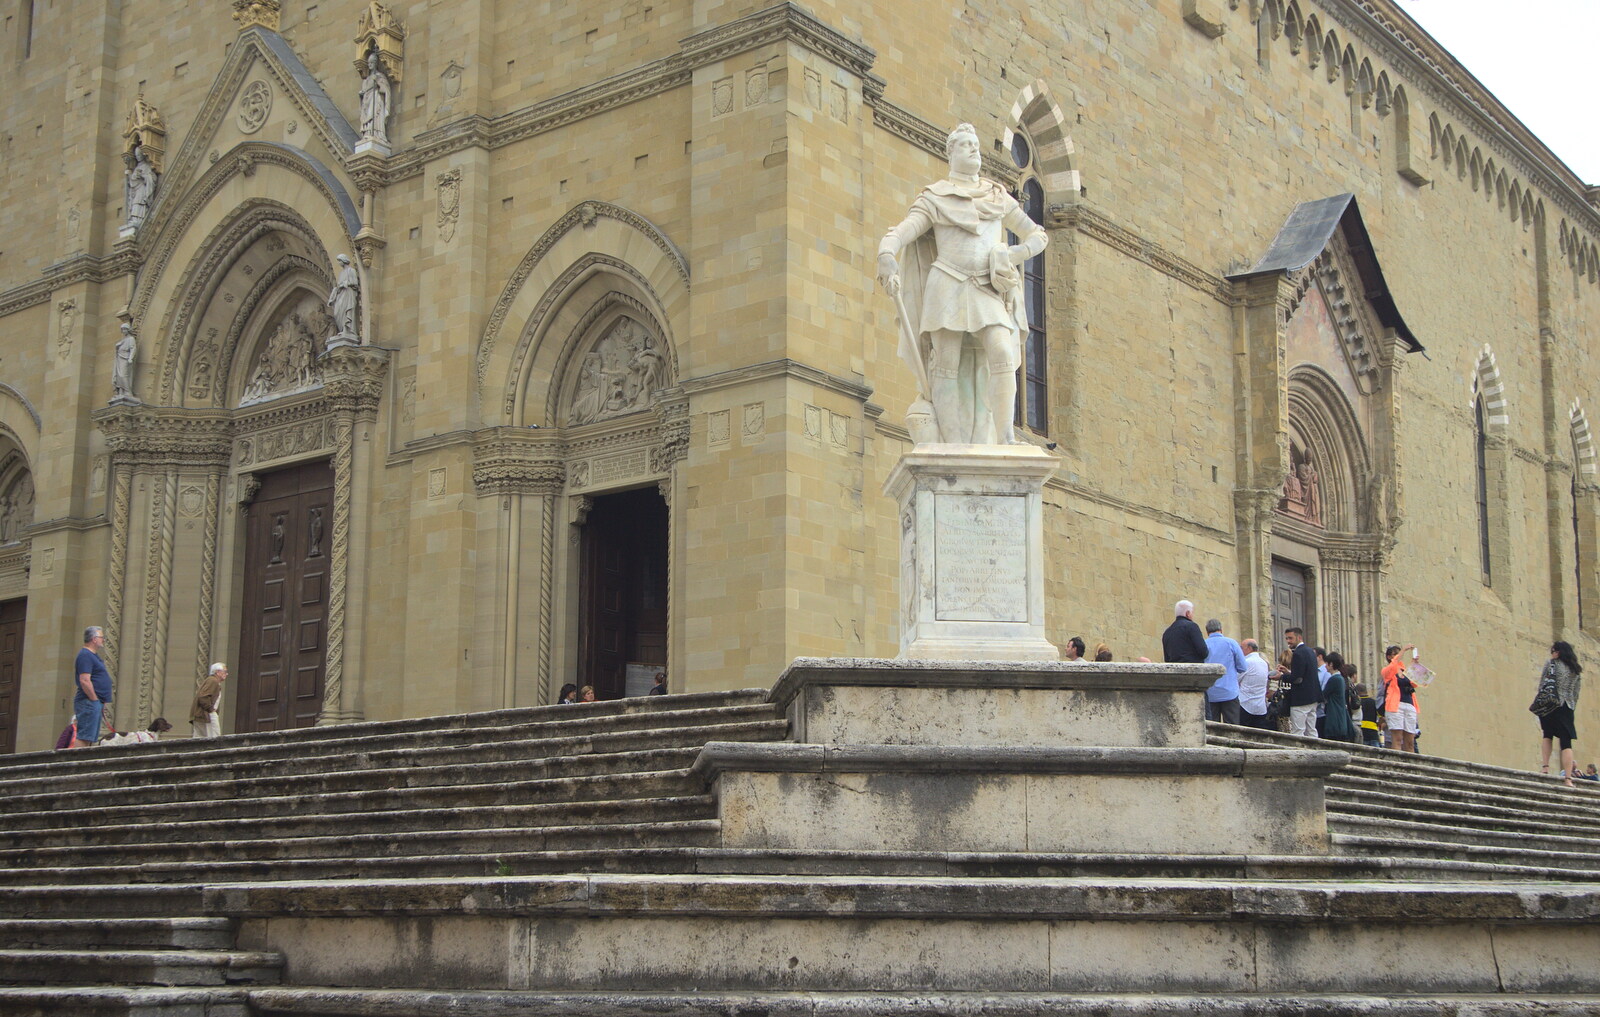 Marconi, Arezzo and the Sagra del Maccherone Festival, Battifolle, Tuscany - 9th June 2013: Some dude statue looks out